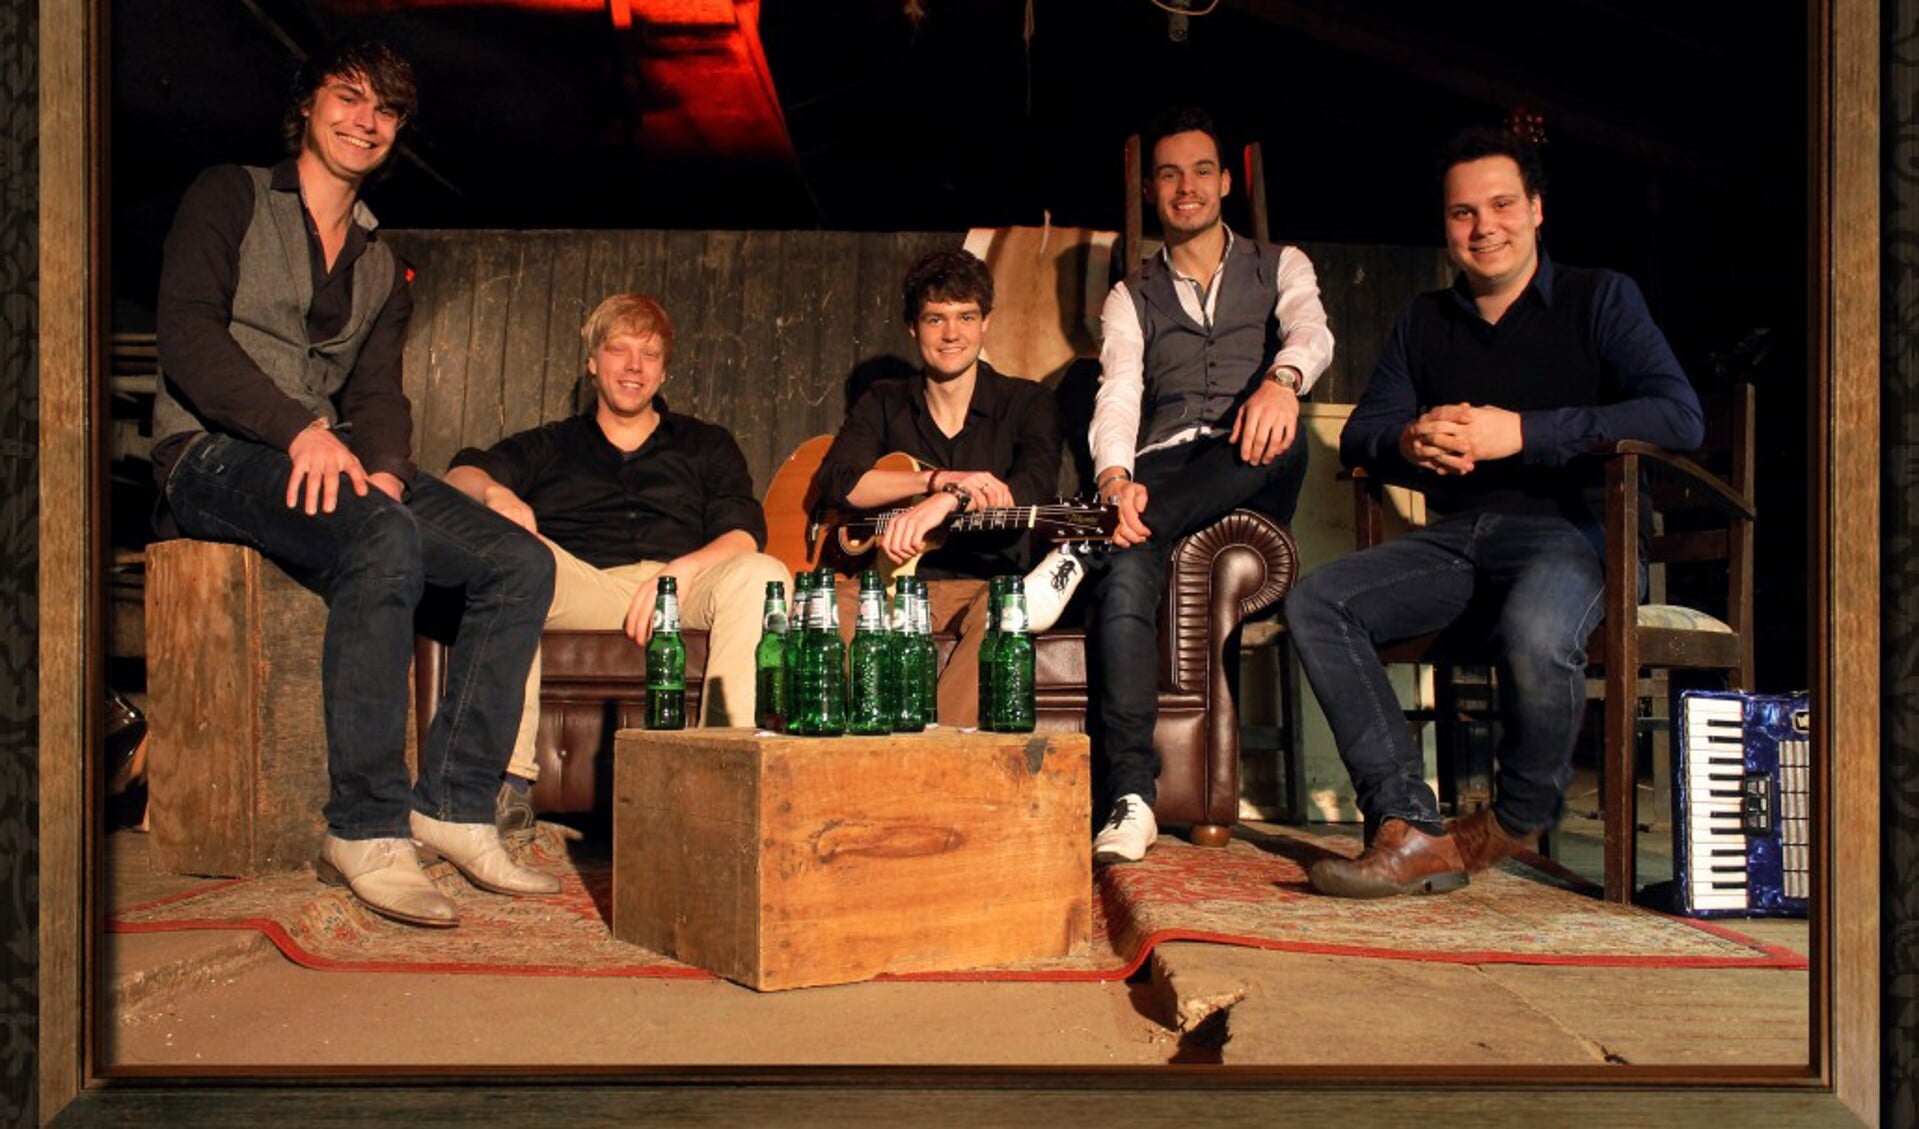 De band Livin‘ Room treedt op in Herfkens. Foto: PR